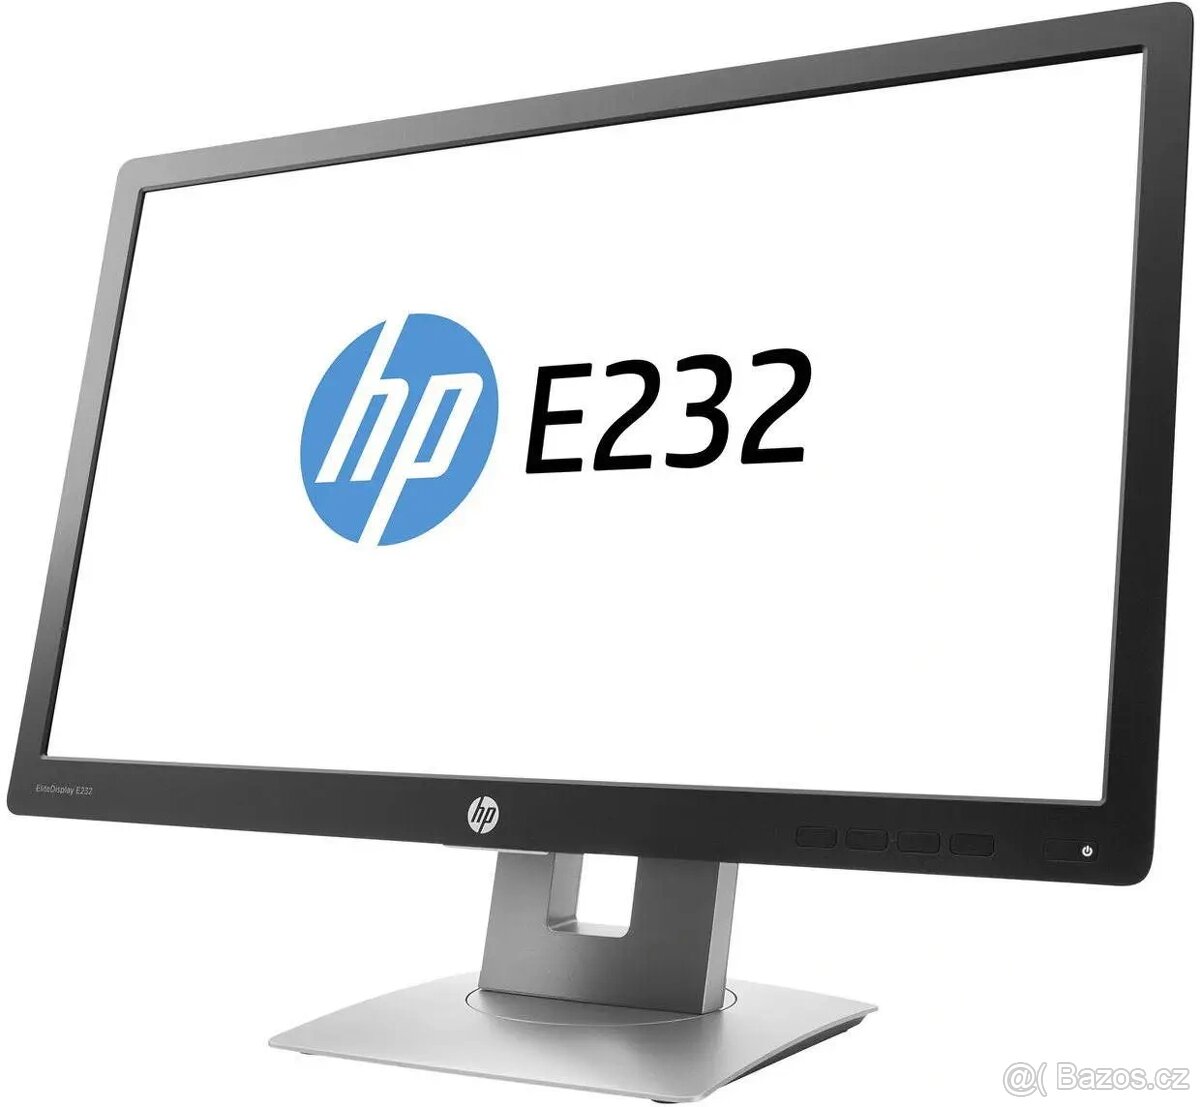 23" HP EliteDisplay E232